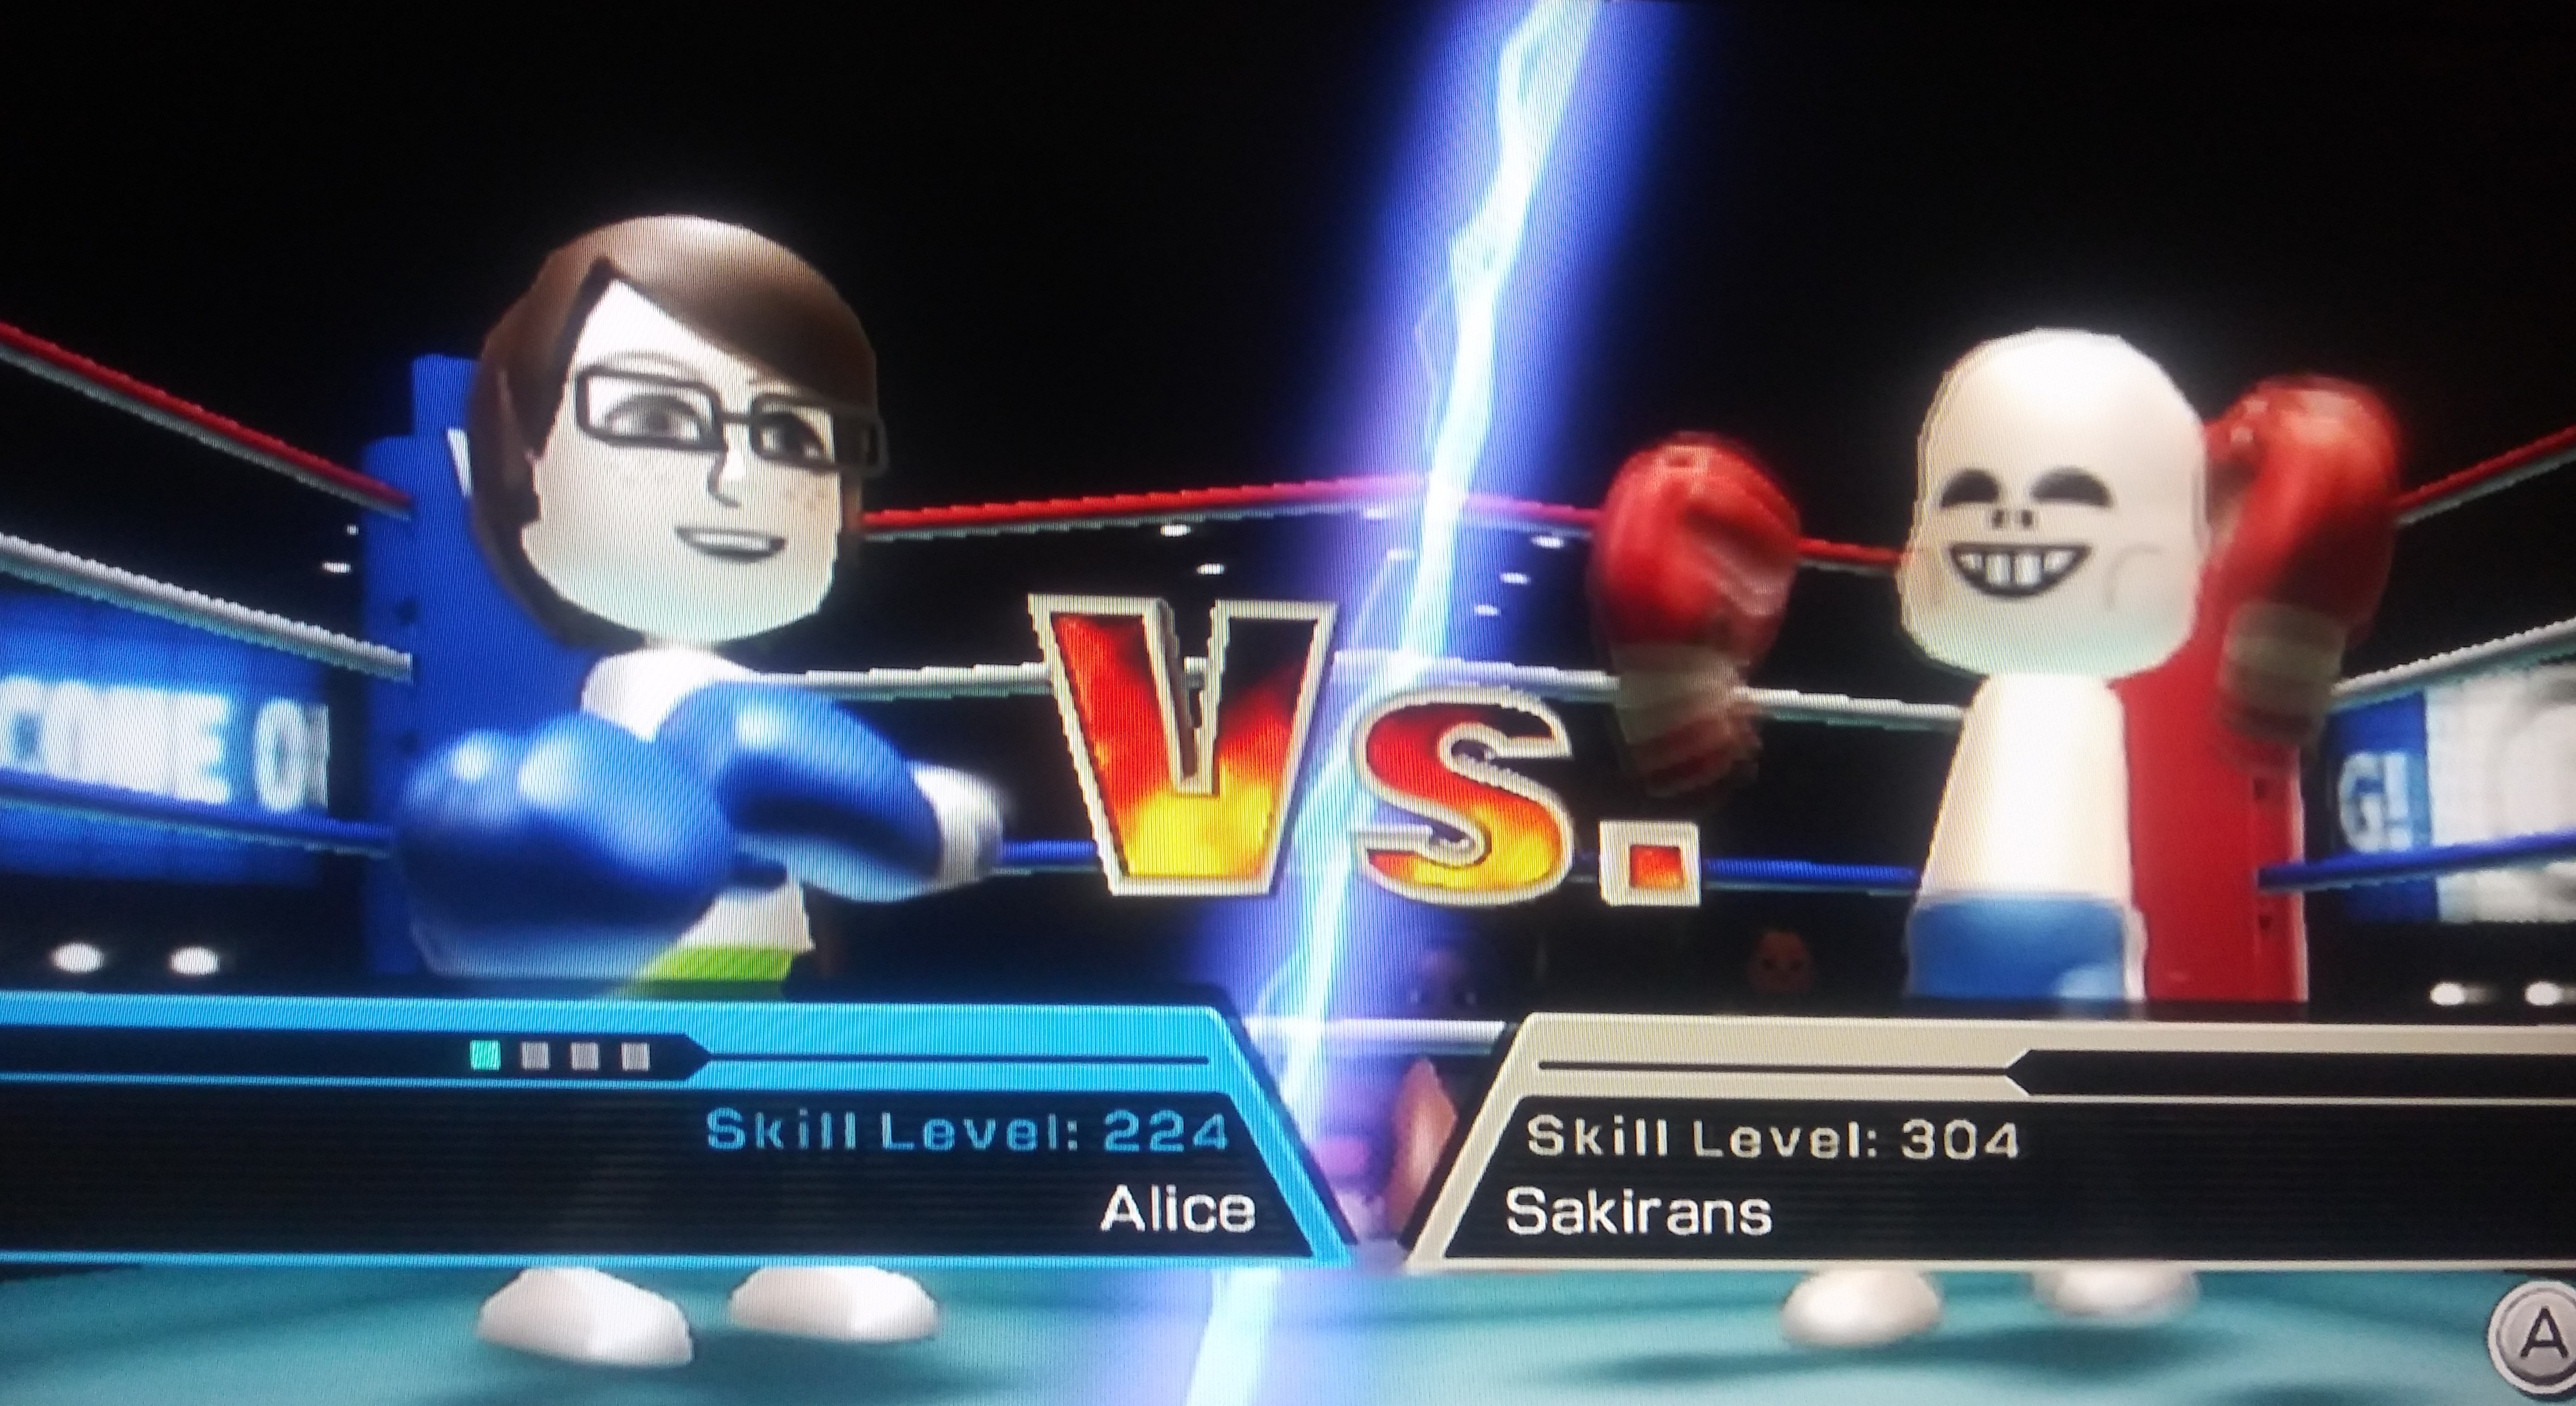 Laatste kapok Tegenwerken Wii Sports - All CPU Miis are SANS! - Kuribo64